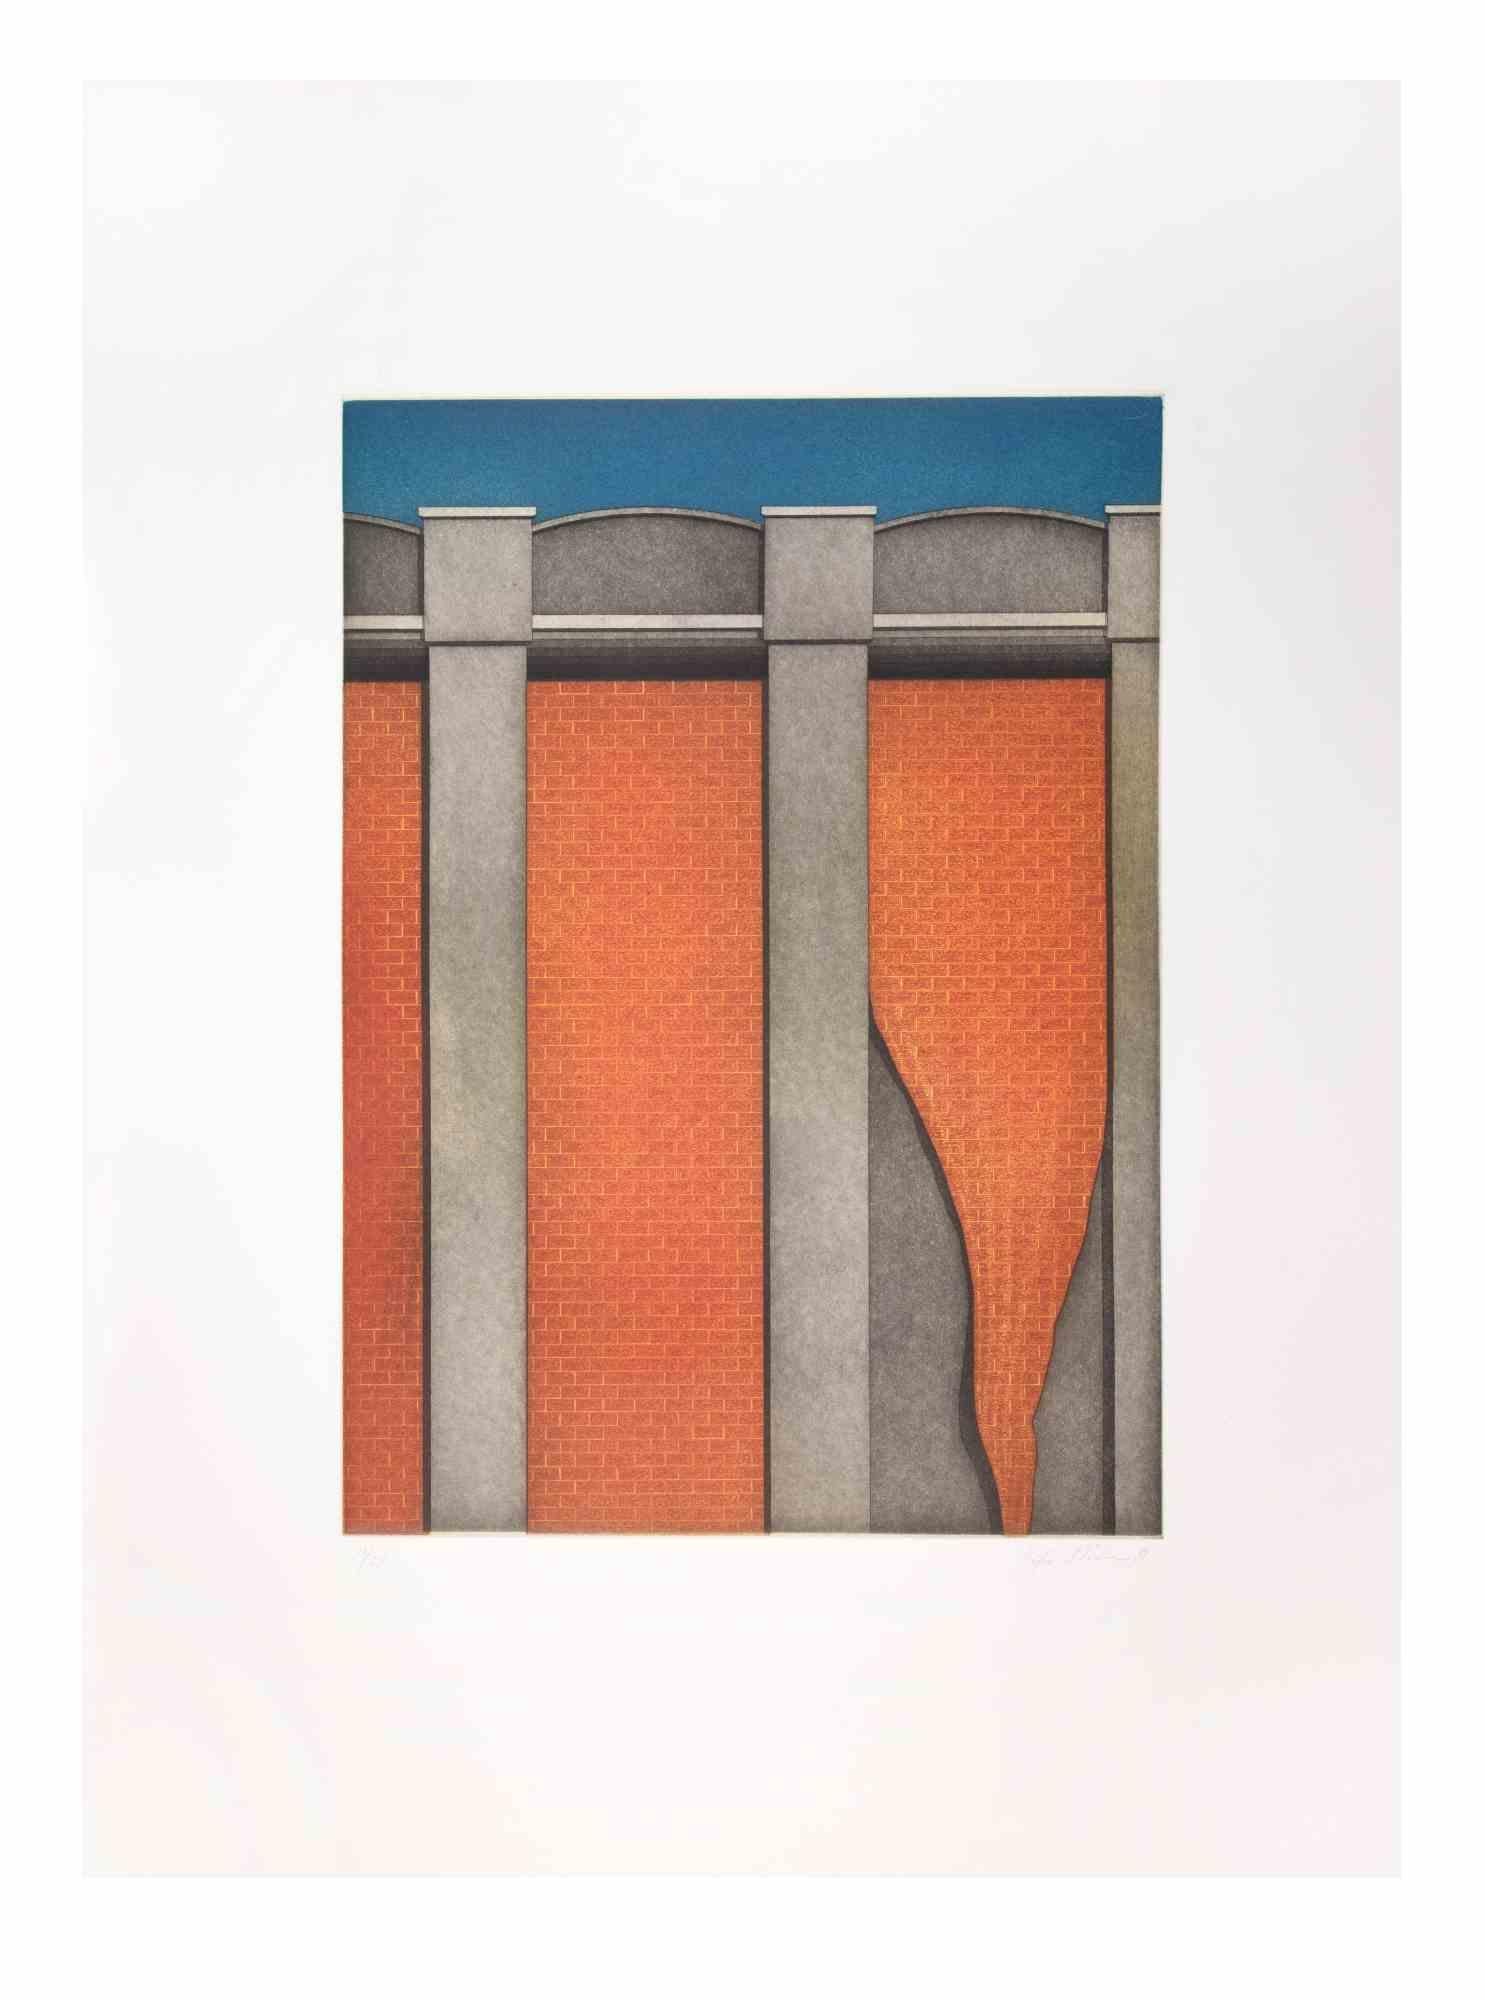 Hangar est une œuvre d'art contemporain réalisée par l'artiste Fifo Stricker en 1981.

Aquatinte et gravure en couleurs mixtes.

Signé et numéroté à la main.

Édition 17/25.